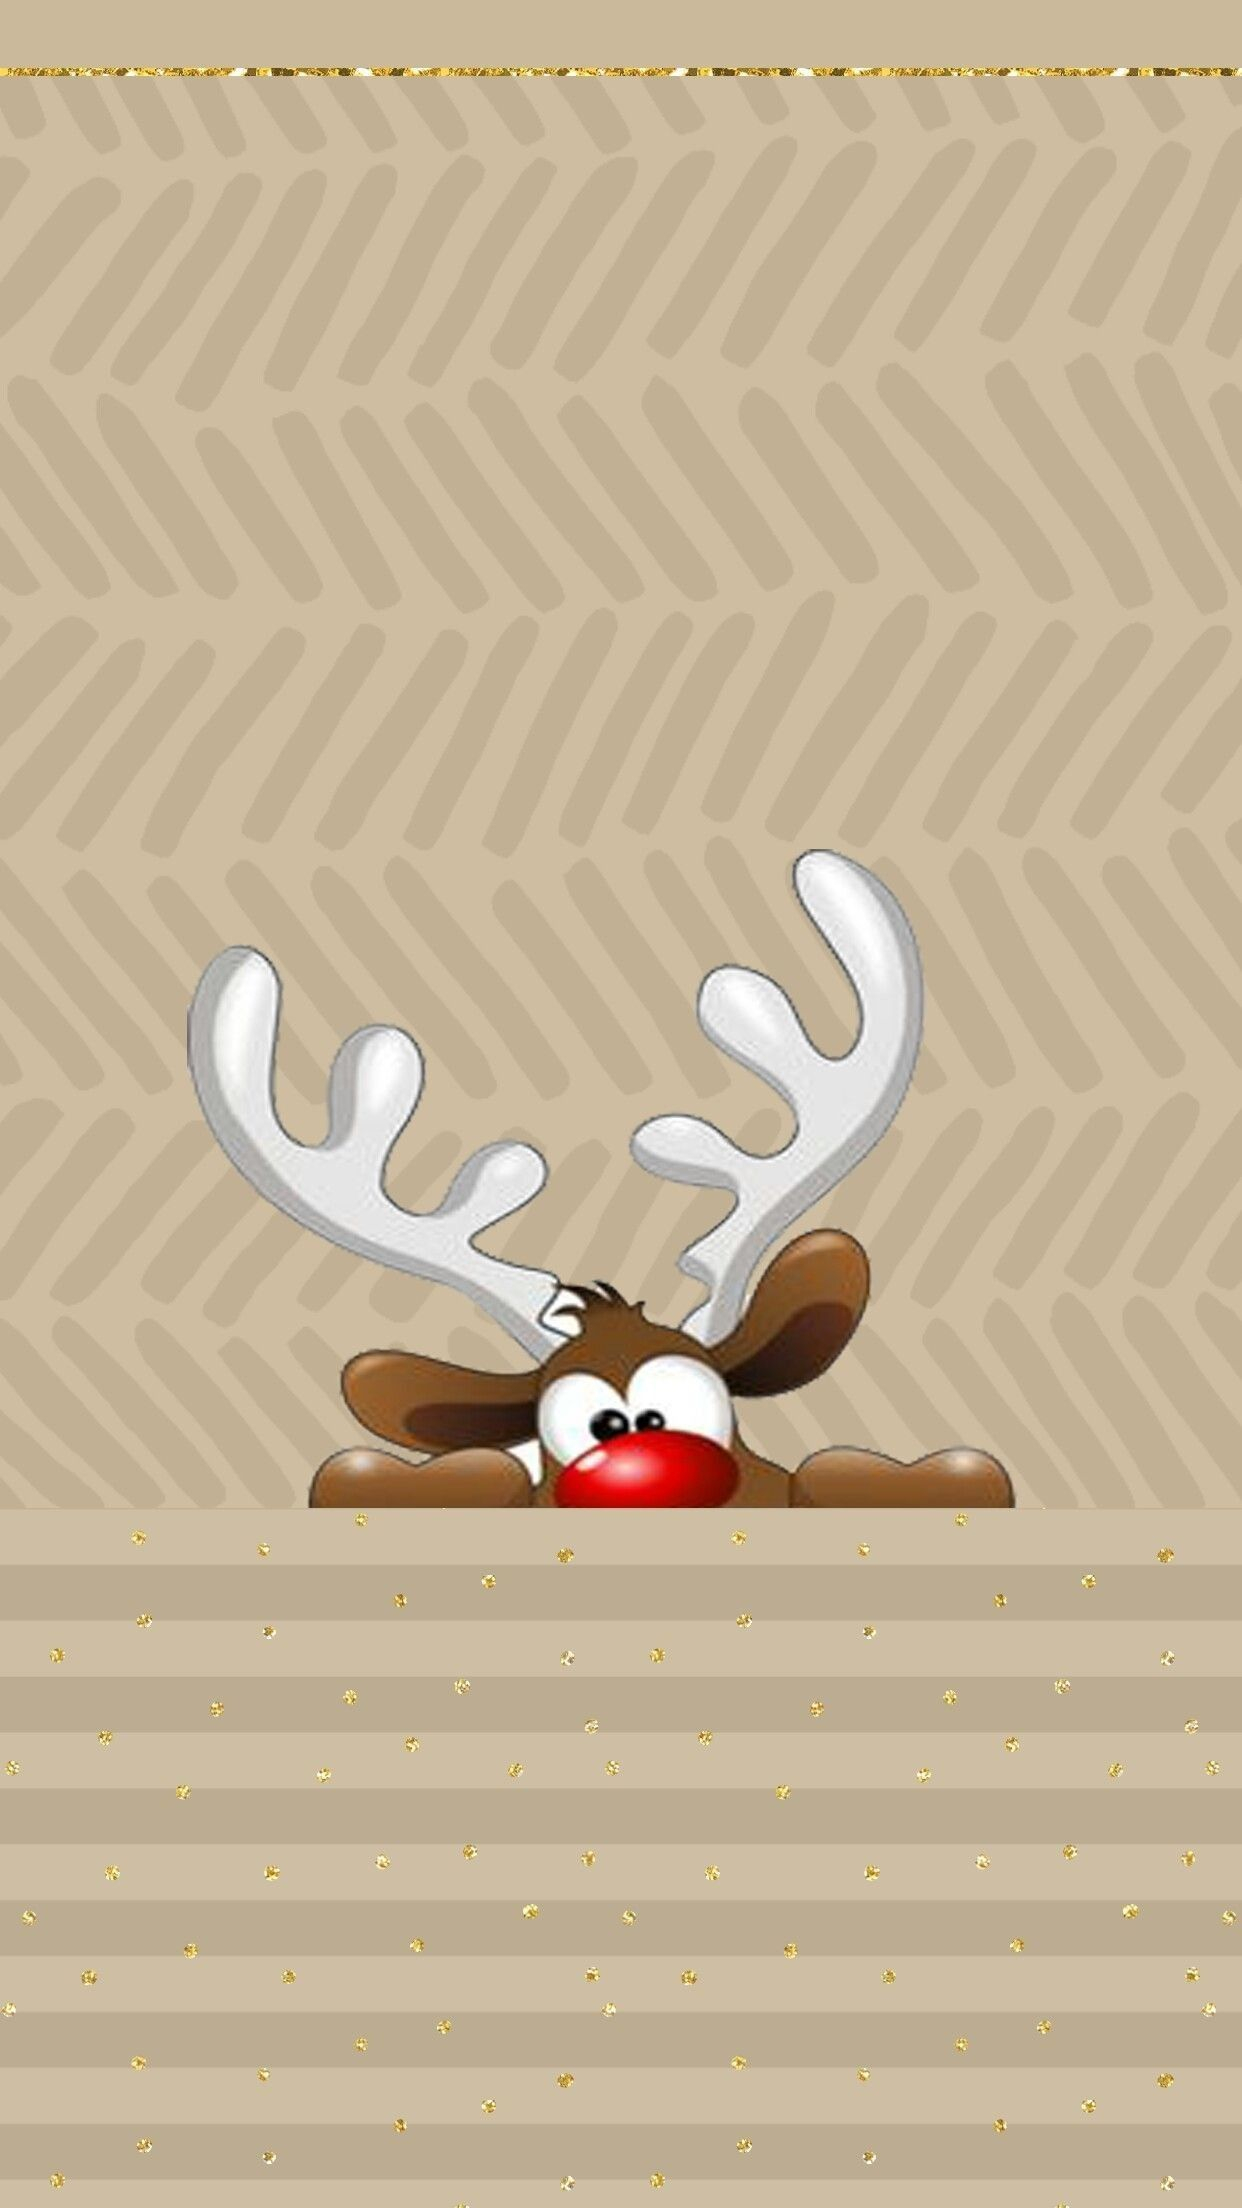 1242x2208 Christmas Reindeer Phone Wallpapers Top Free Christmas Reindeer Phone Backgrounds